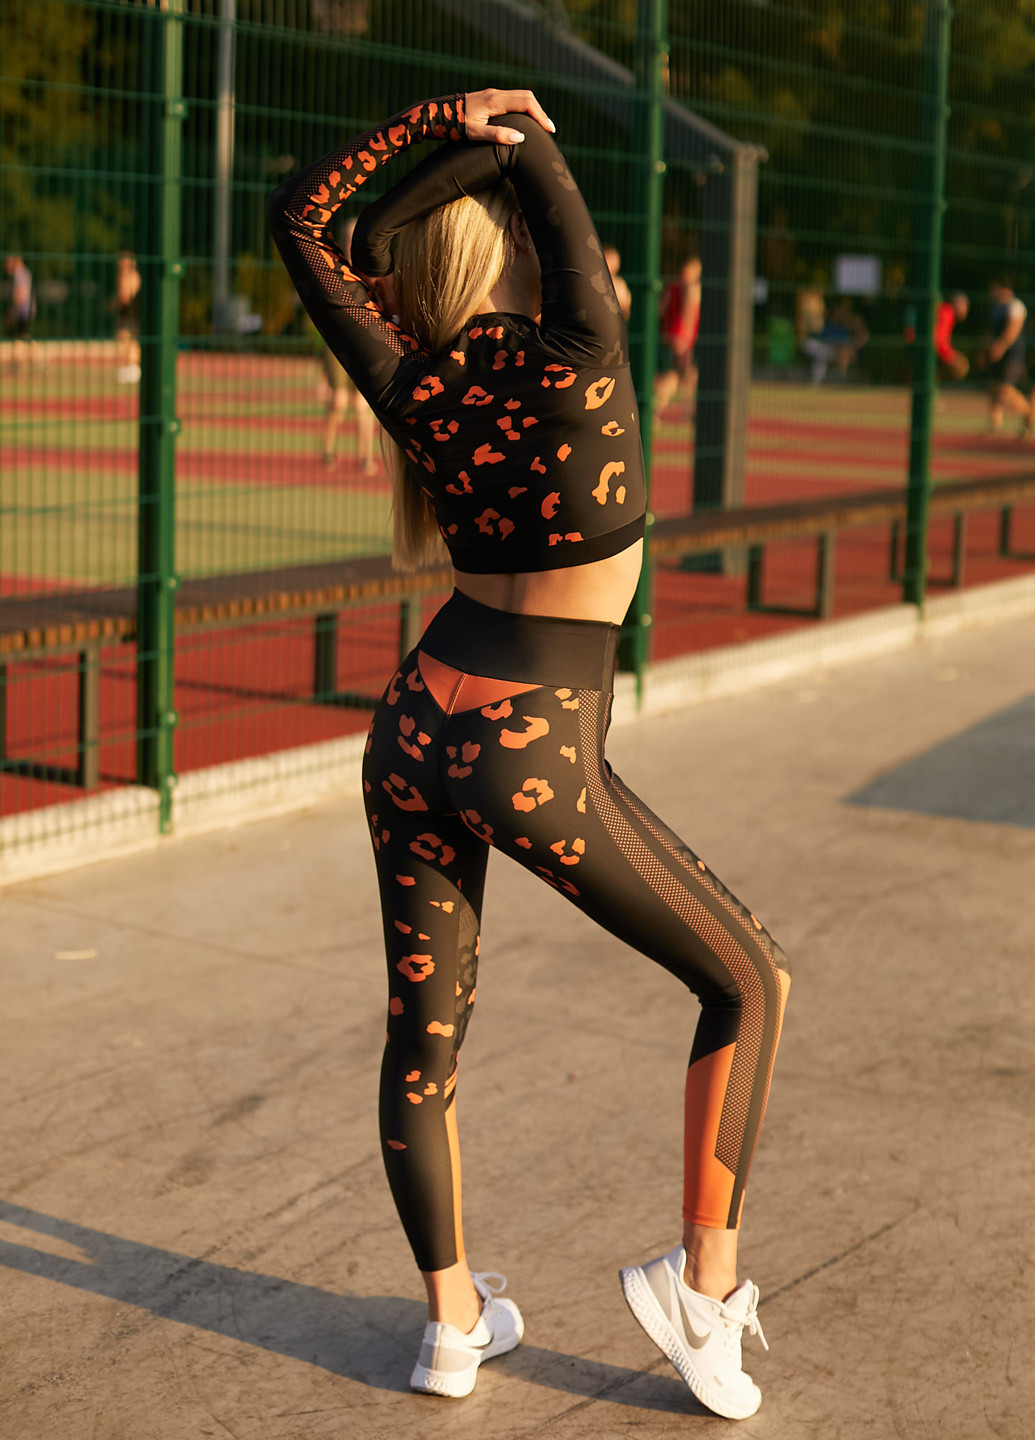 Женский спортивный костюм (комплект: рашгард + леггинсы) для занятий спортом GF SPORT брючный леопардовый чёрный спортивный полиэстер